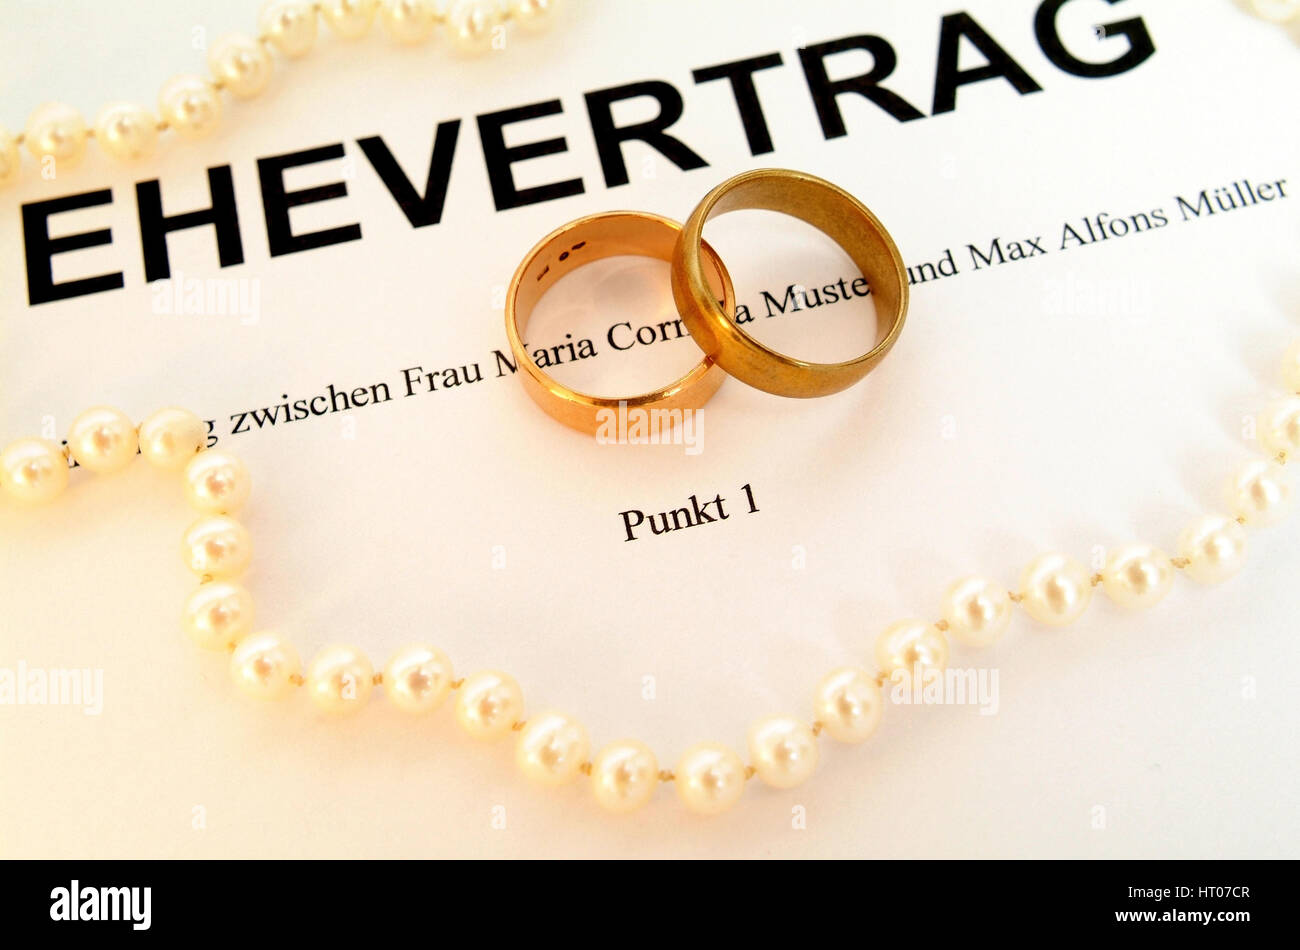 Symbolbild Ehevertrag - syymbolic per contratto di matrimonio Foto Stock